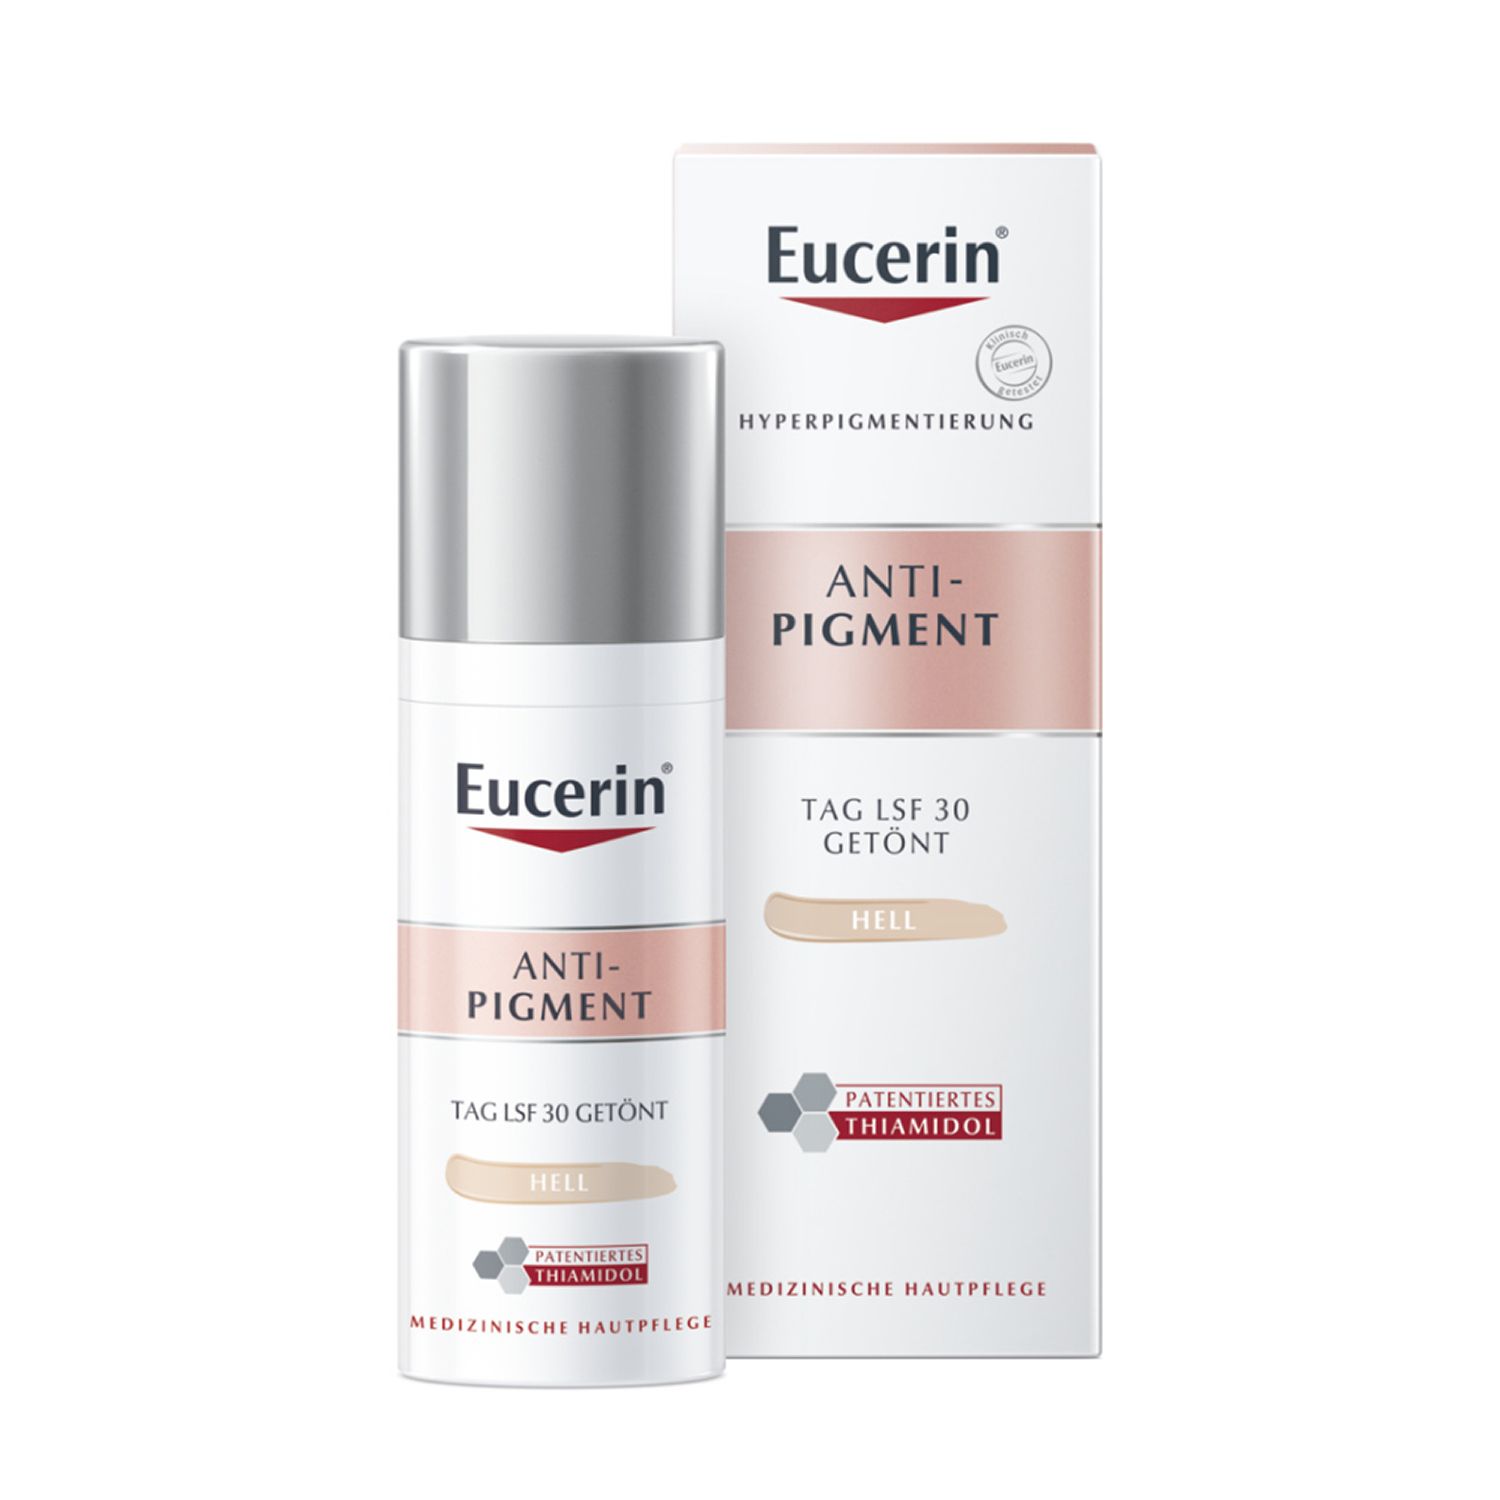 Eucerin® Anti-Pigment Tagescreme mit Thiamidol®, schnell einziehende, getönte Antipigmentcreme mit LSF 30, hell + Zusatz